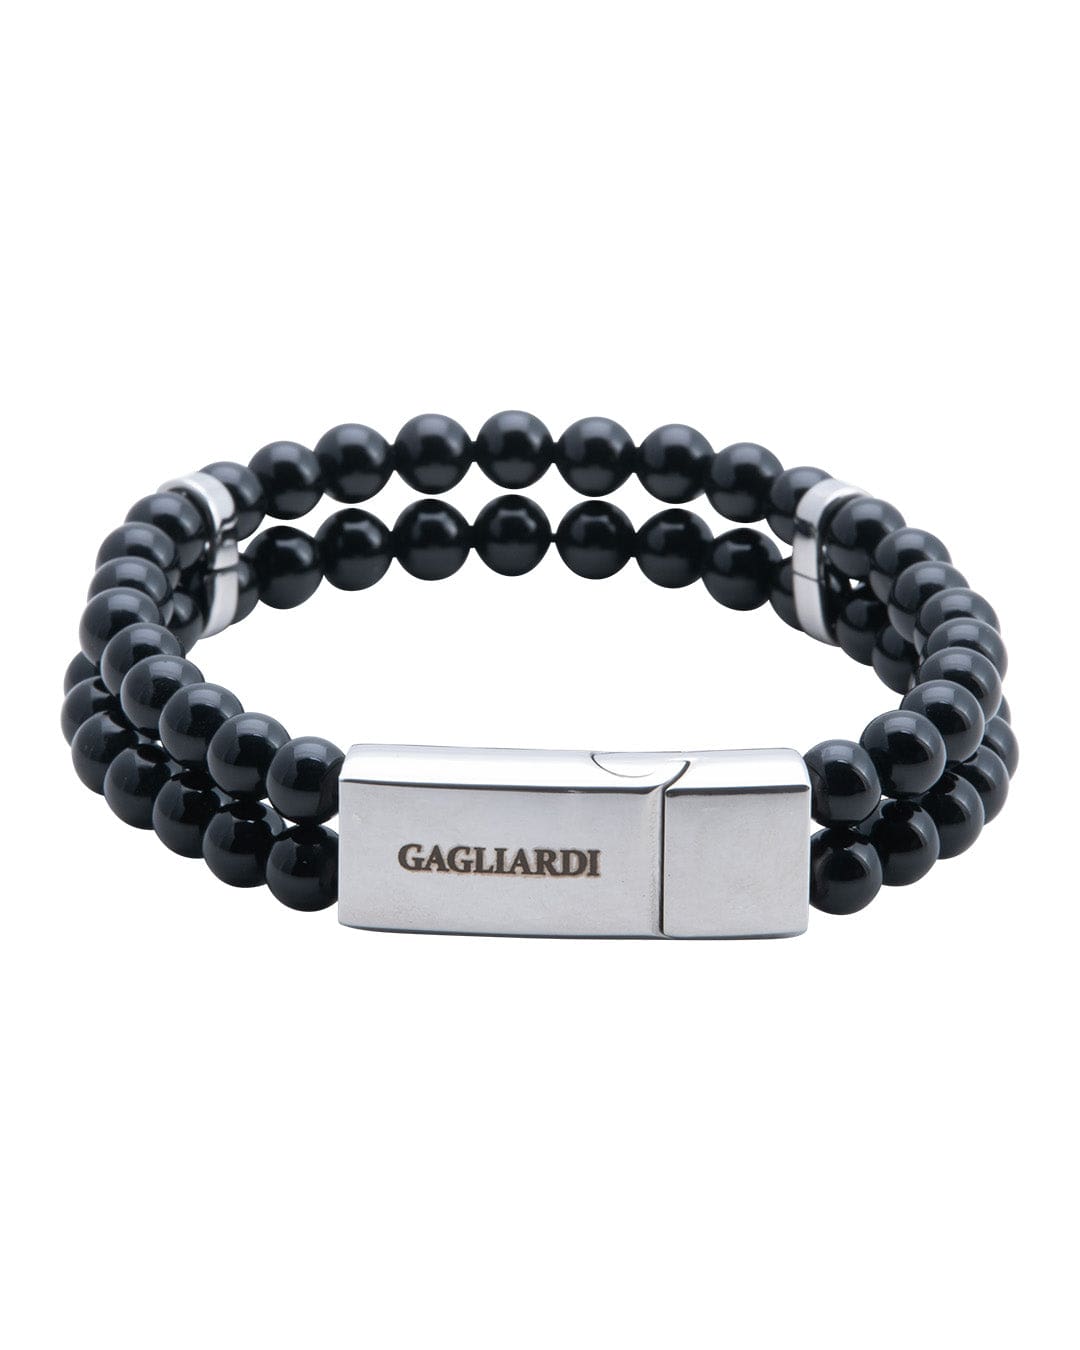 Gagliardi Bracelets Gagliardi Black Agate Stone Bead Bracelet With Polished Steel Clasp